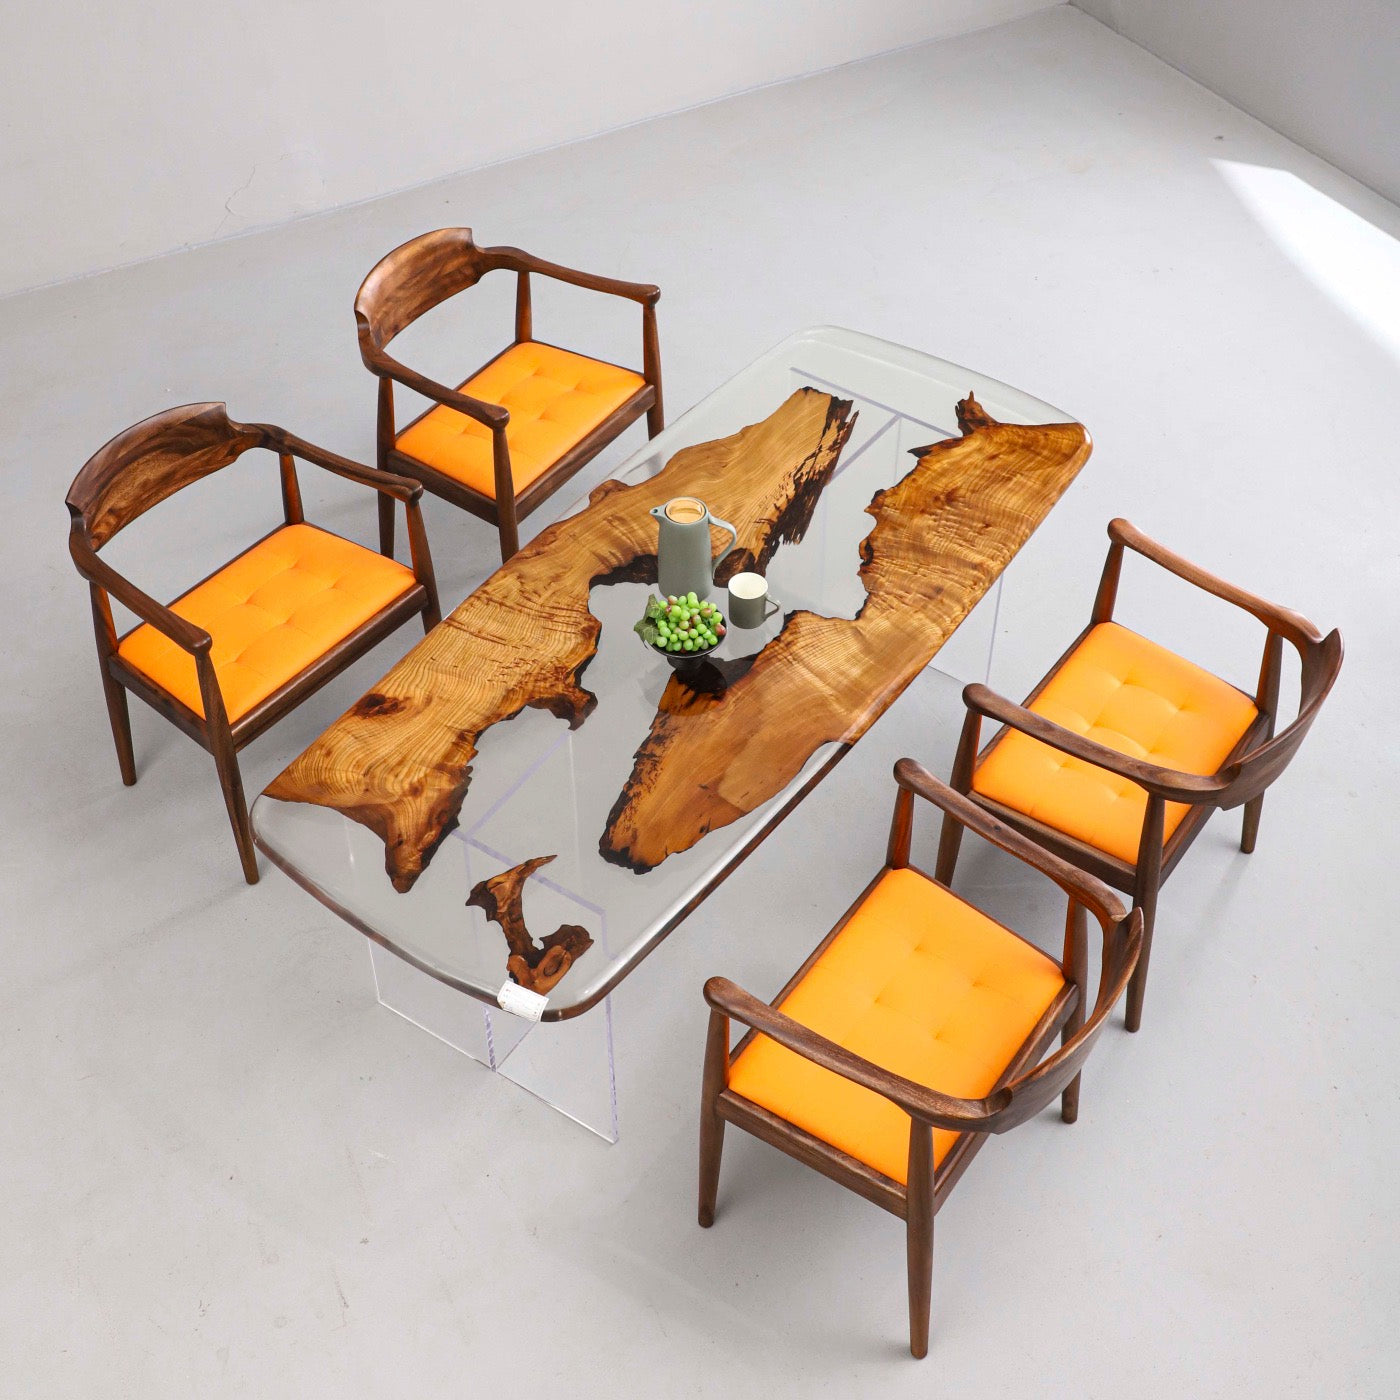 Tavolo in legno di canfora in resina epossidica a grana piacevole, tavolo in resina epossidica di bella struttura